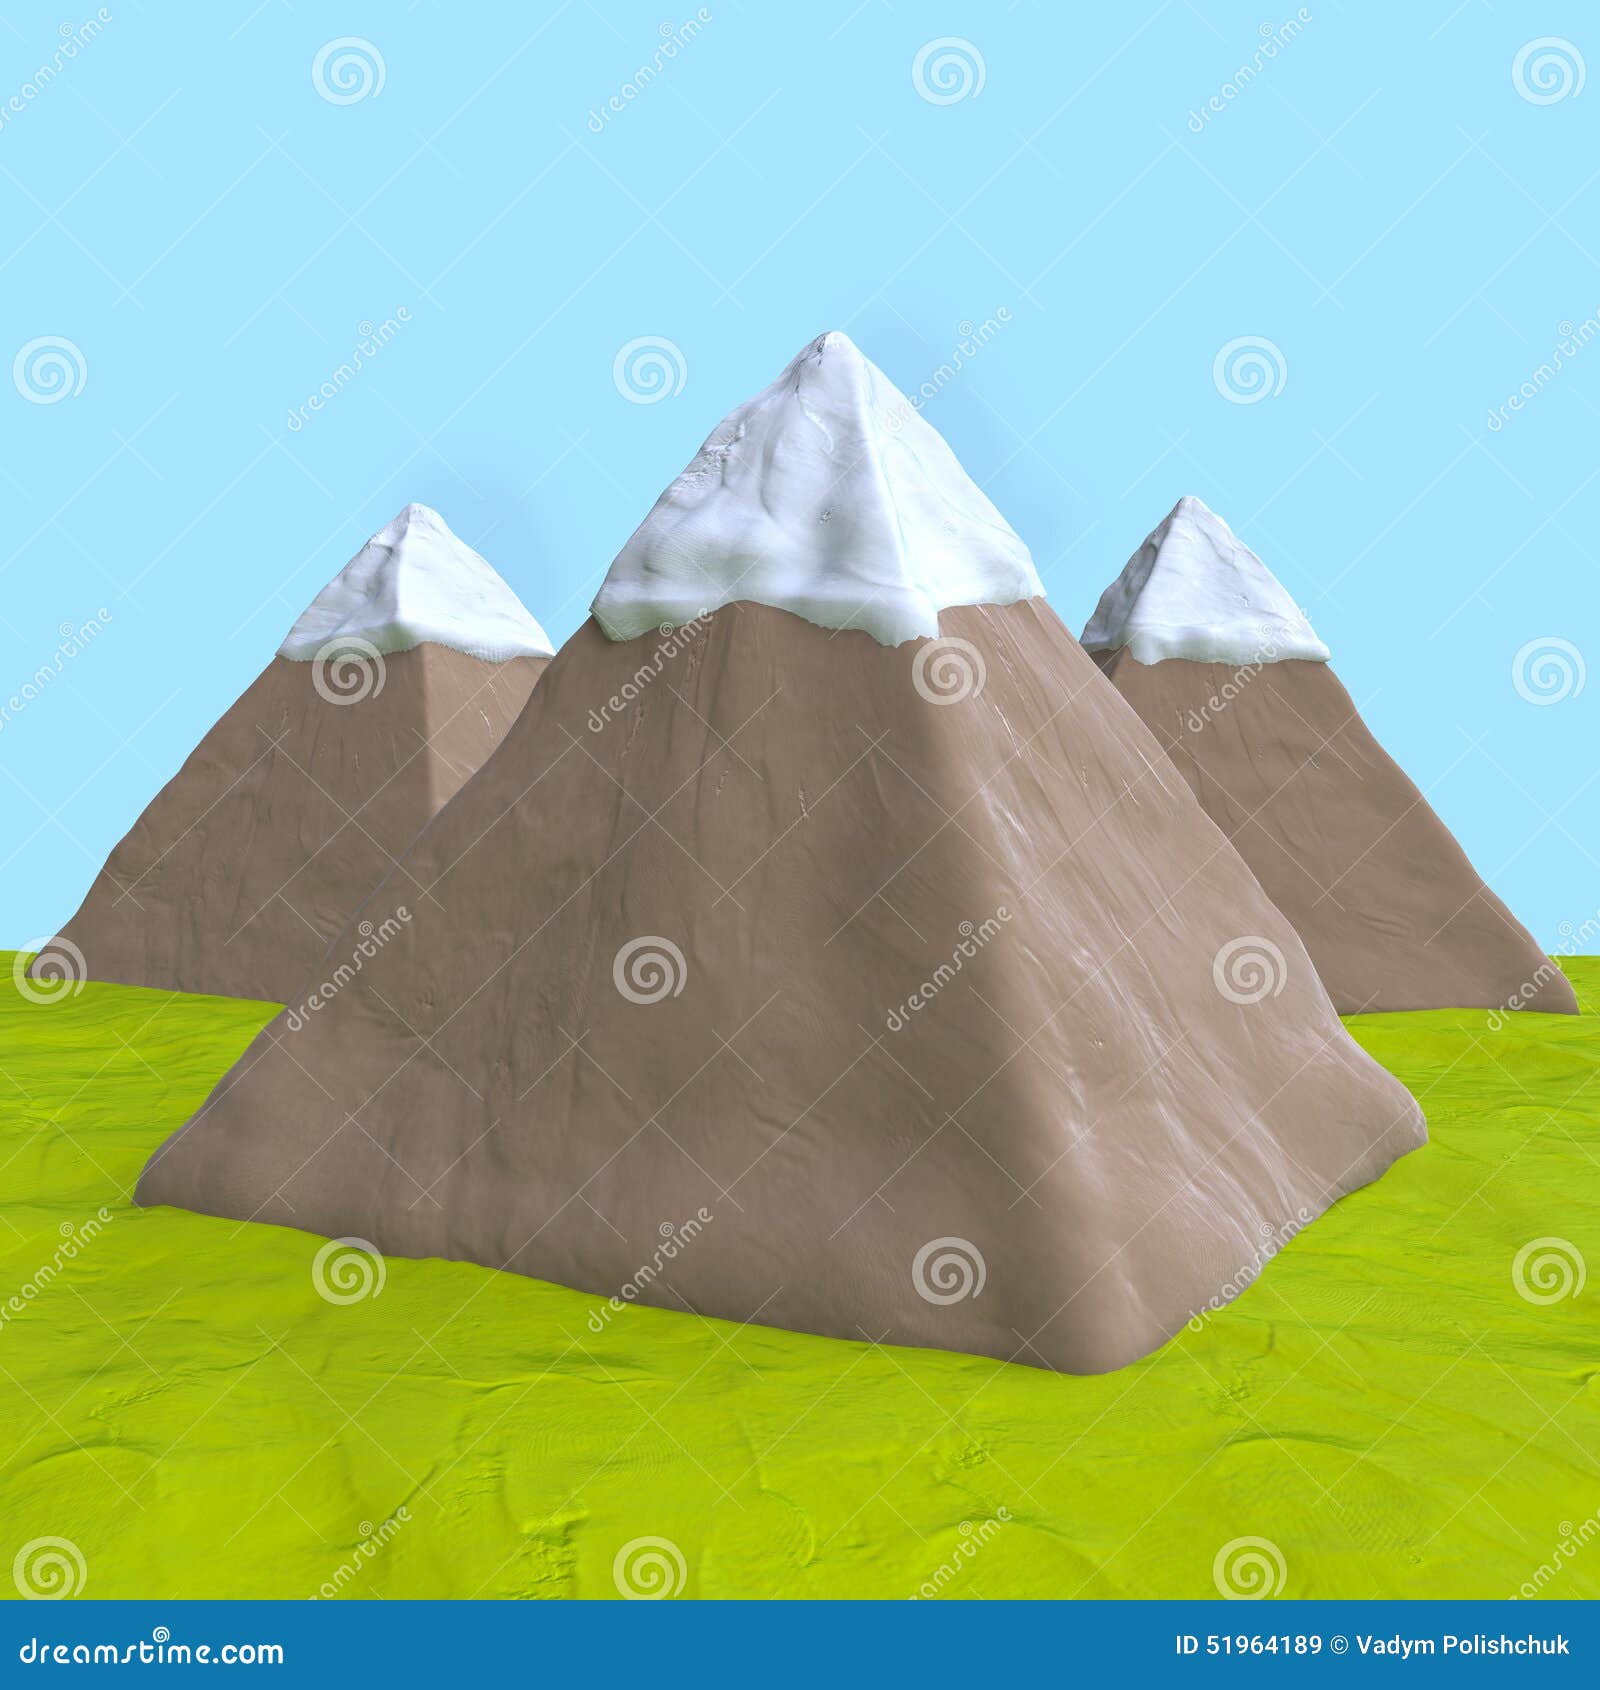 Поставь холмы. Макет горы. Горы из пластилина. Макет горы 2 класс. Макет горы из бумаги.